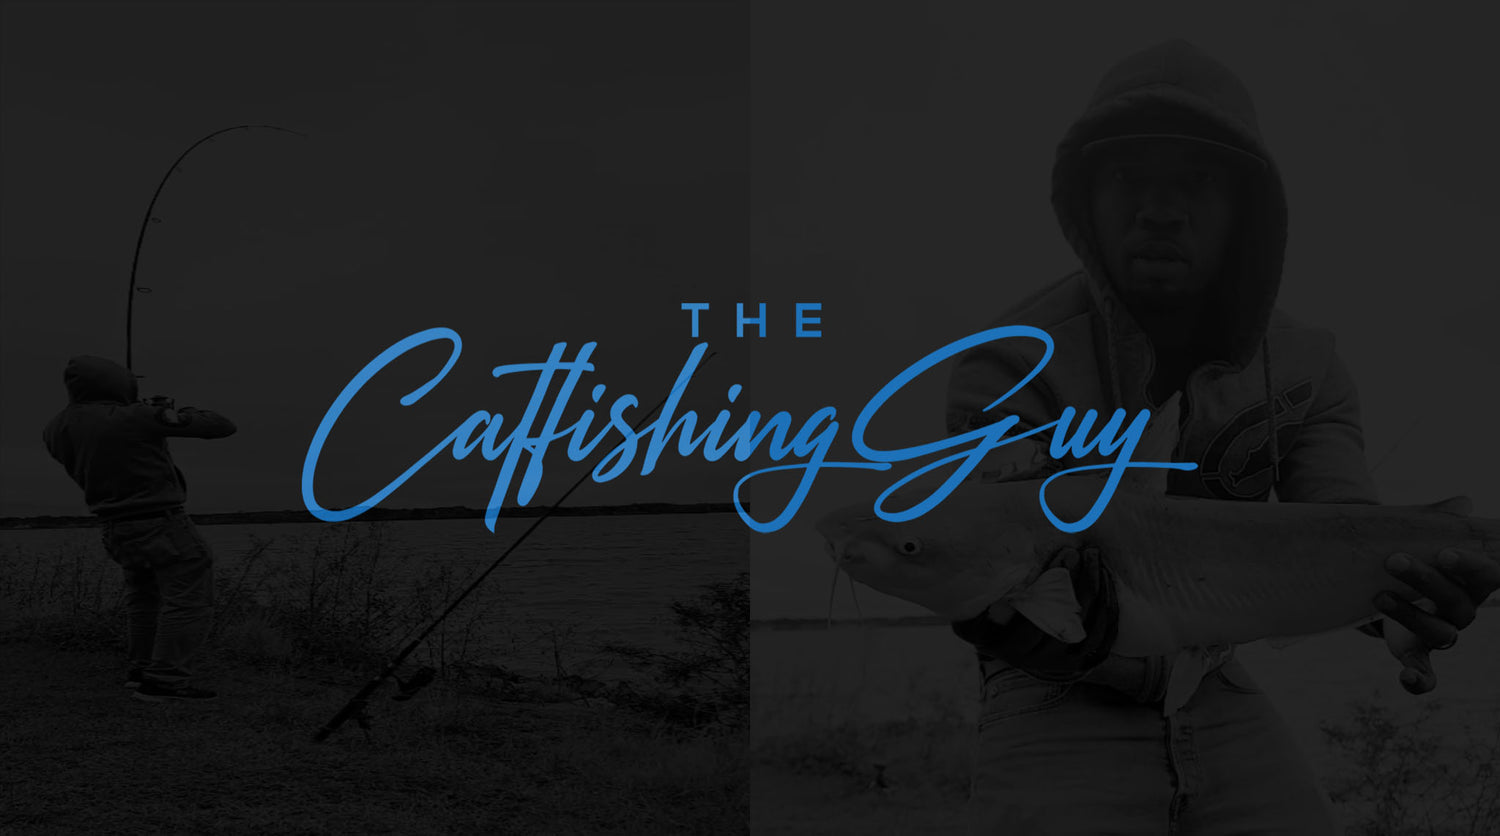 The Catfishing Guy